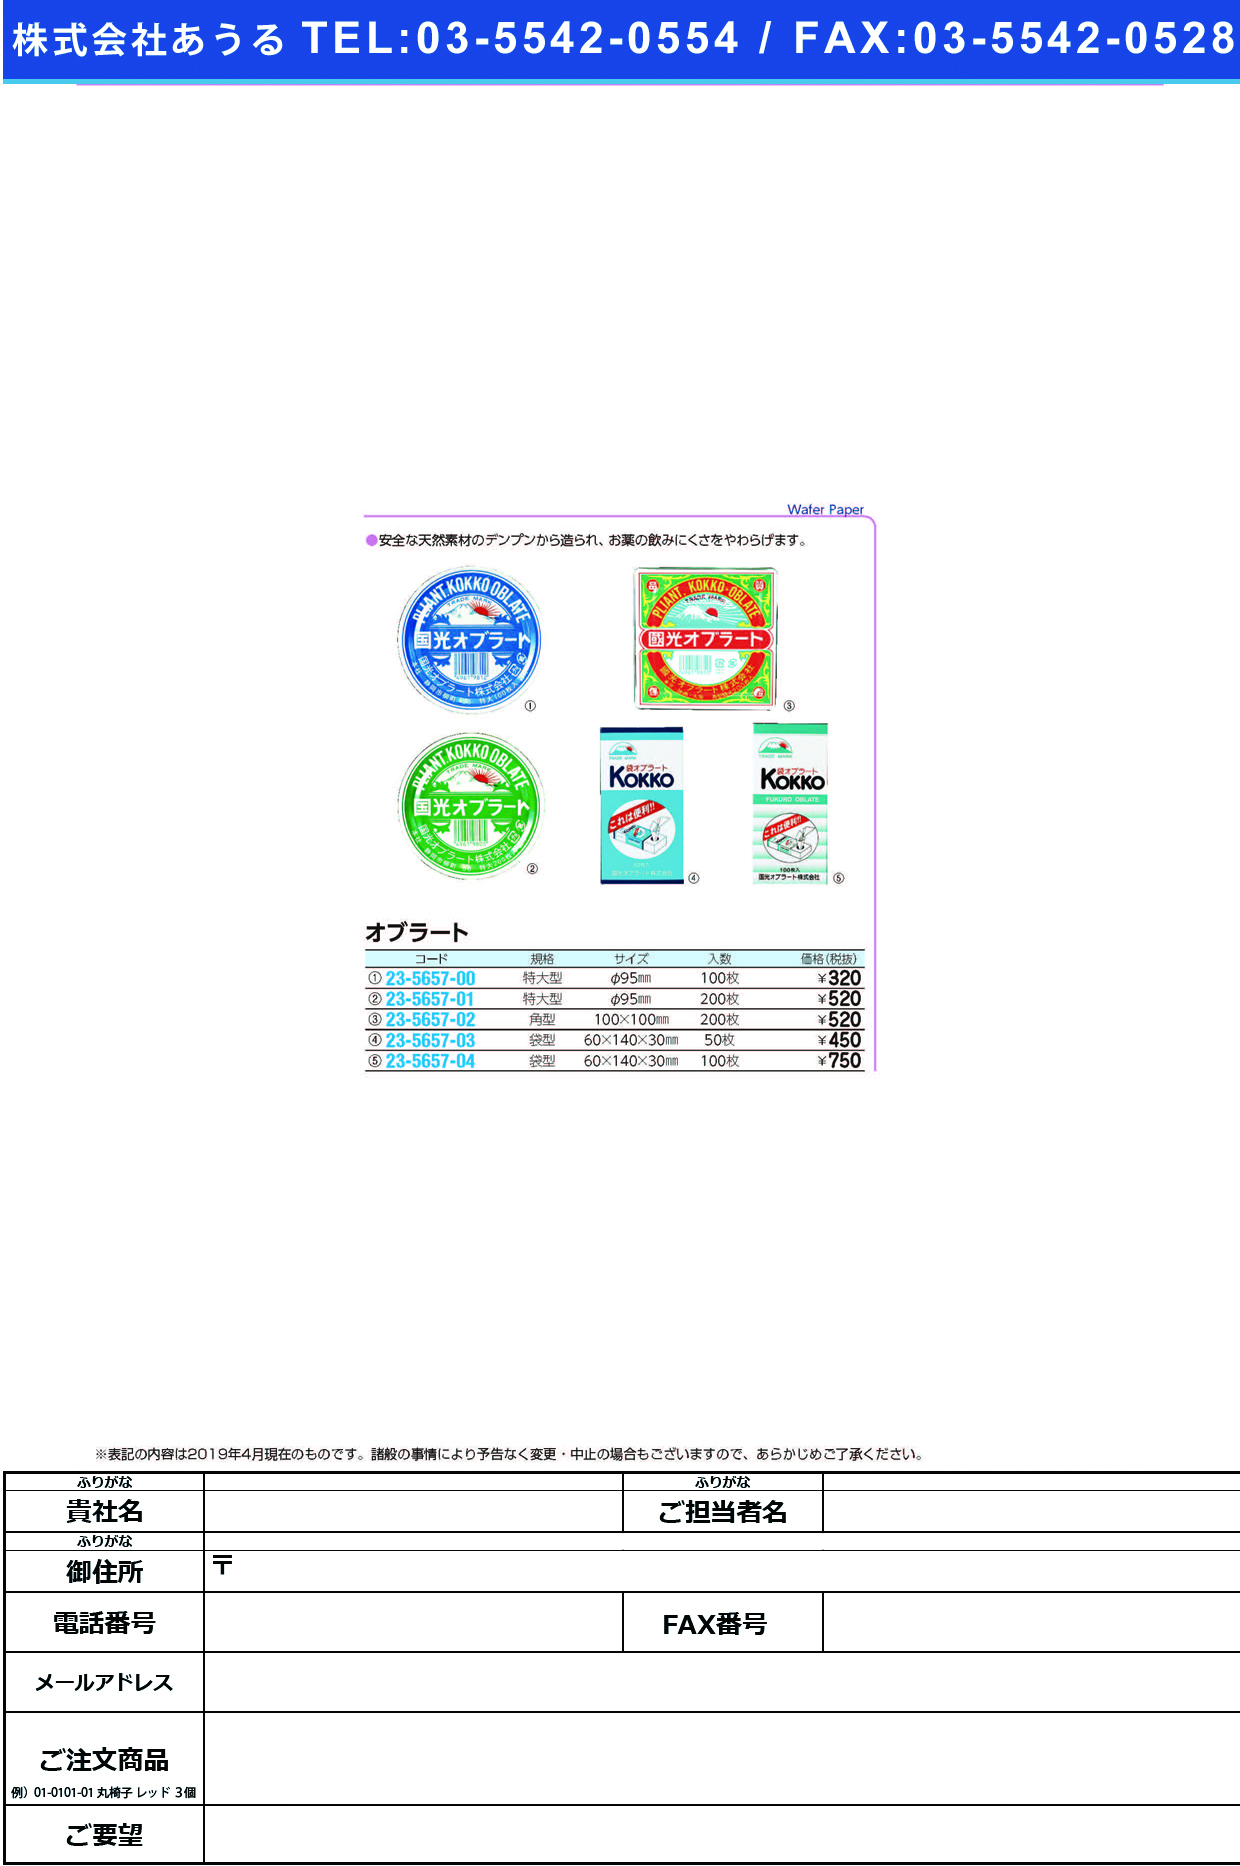 (23-5657-04)国光オブラート袋型 100ﾏｲ ｺｯｺｳｵﾌﾞﾗｰﾄﾌｸﾛｶﾞﾀ【1個単位】【2019年カタログ商品】